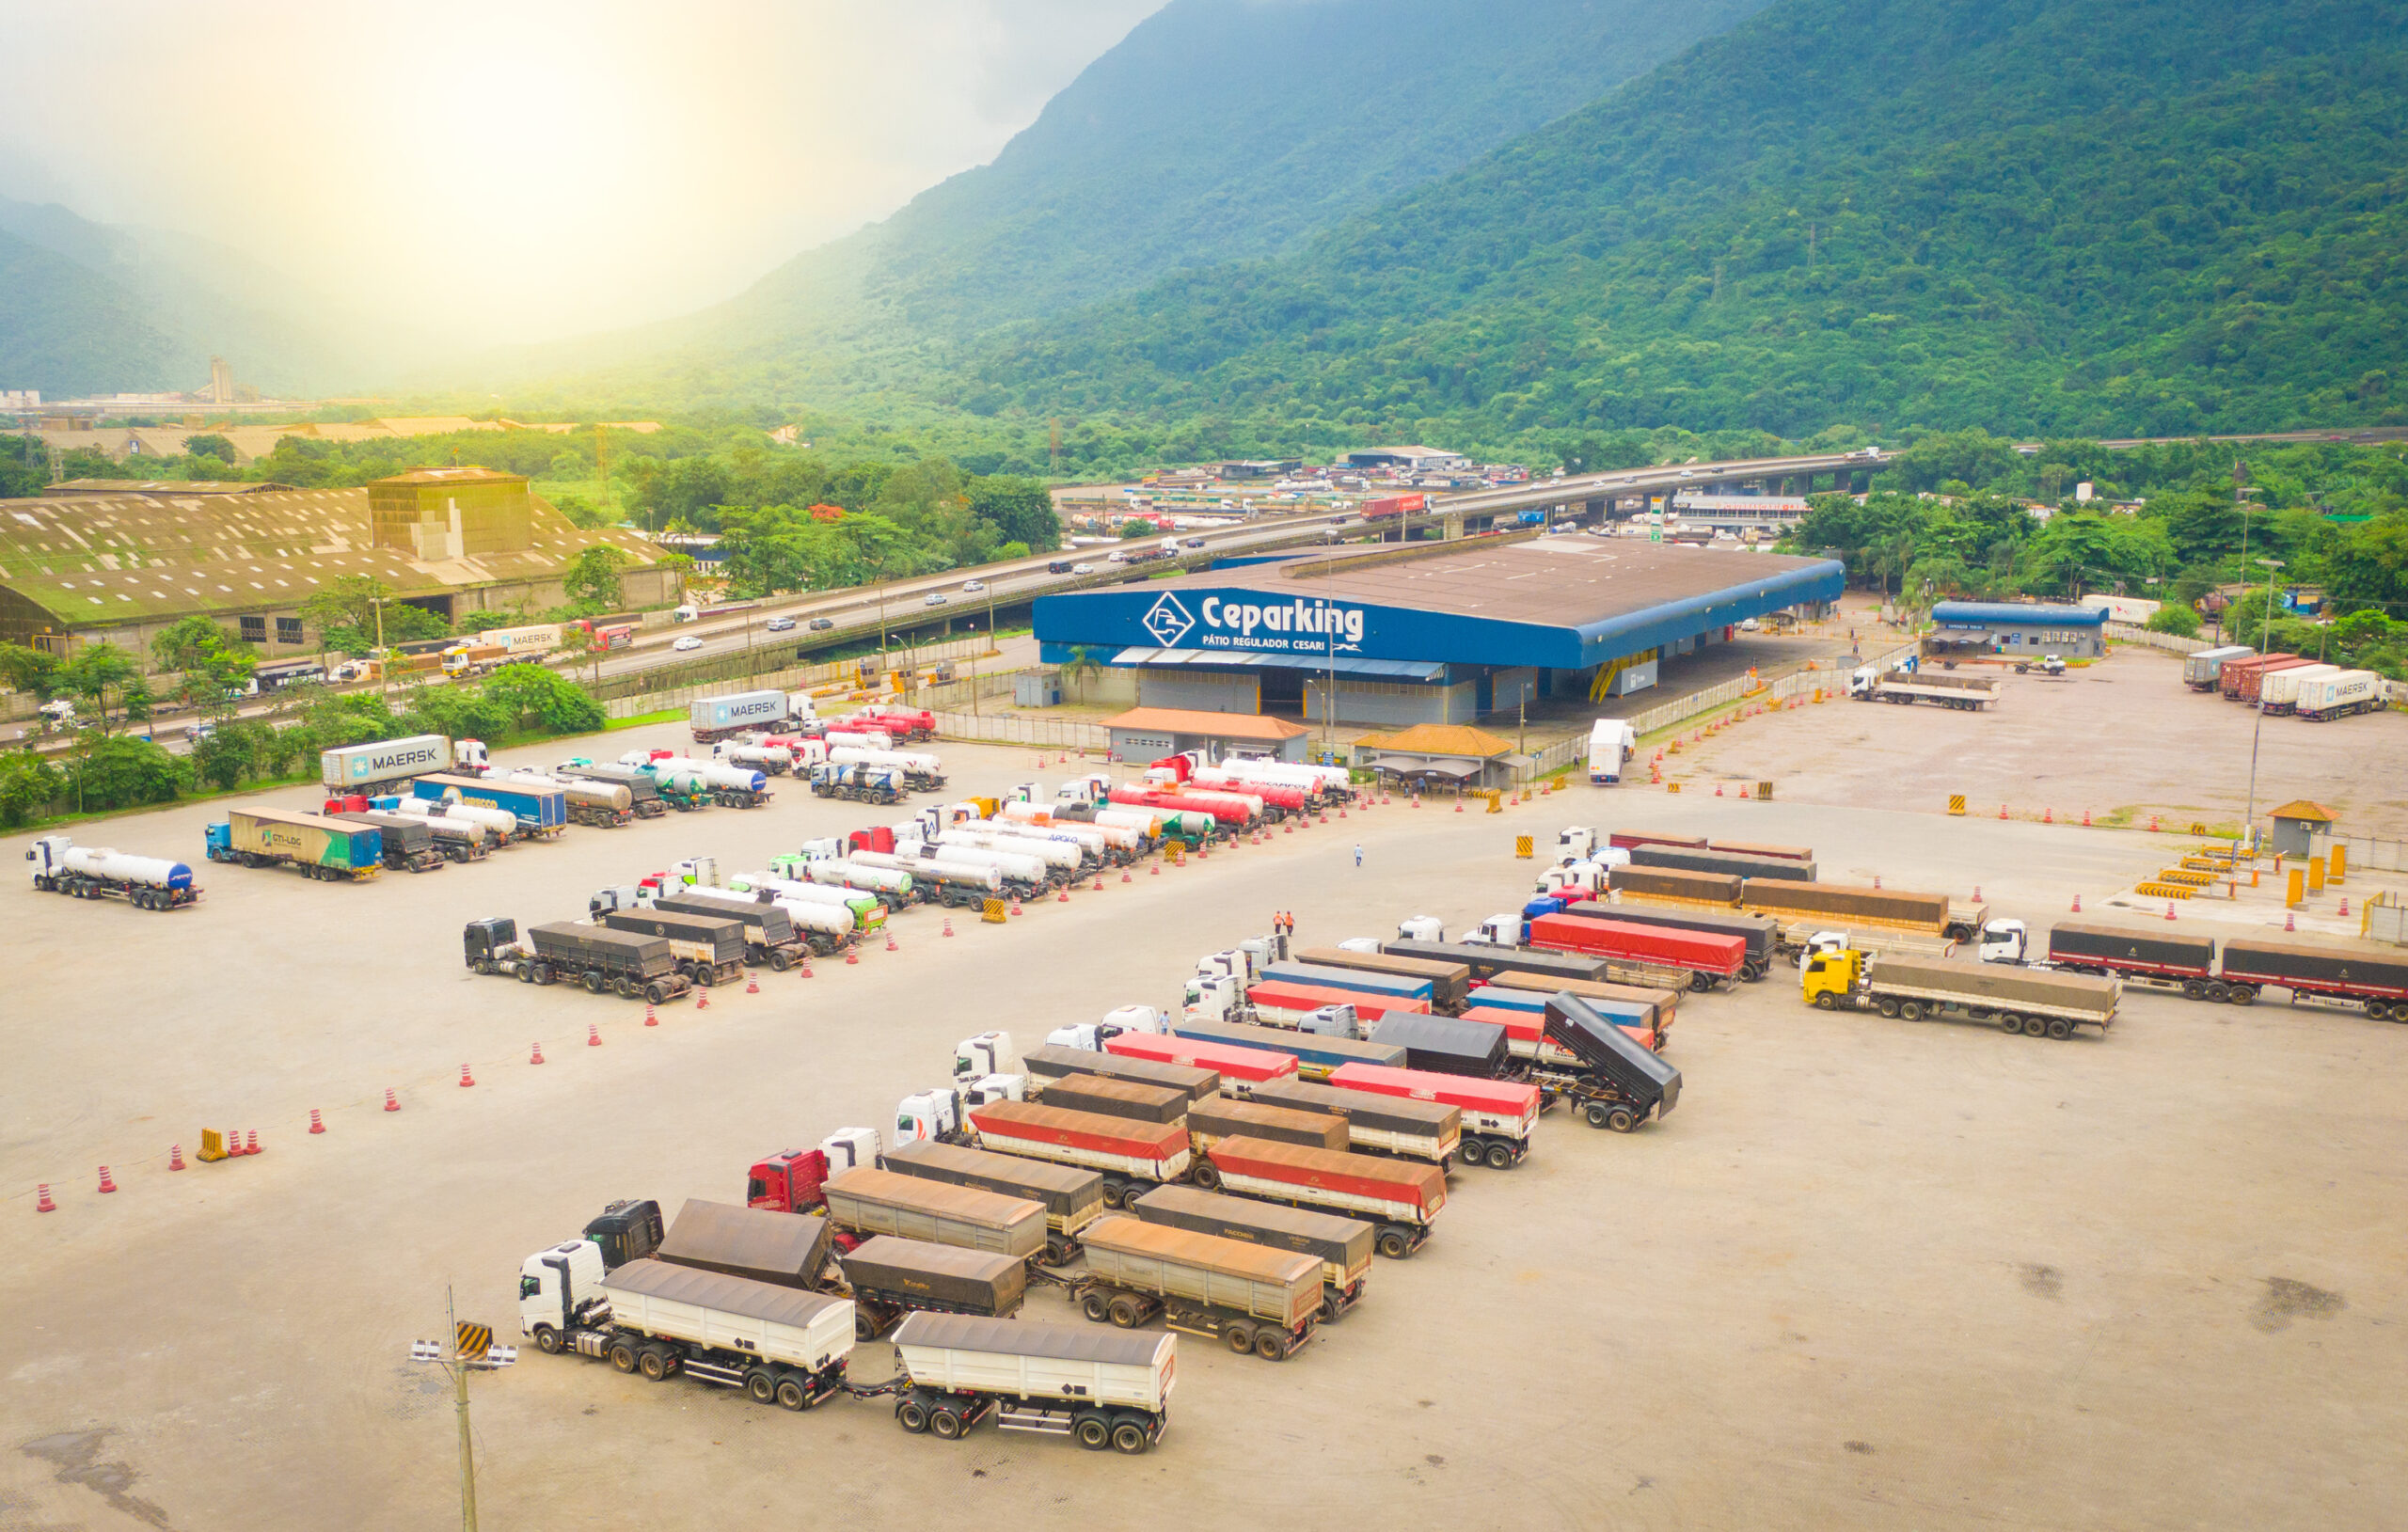 O grupo de logística e serviços de transporte de cargas Cesari assumiu a ConPort Afretamentos Marítimos e agora expande as suas operações no seu terminal conectado ao Porto de Santos com ainda mais infraestrutura e um amplo portfólio de serviços a oferecer.